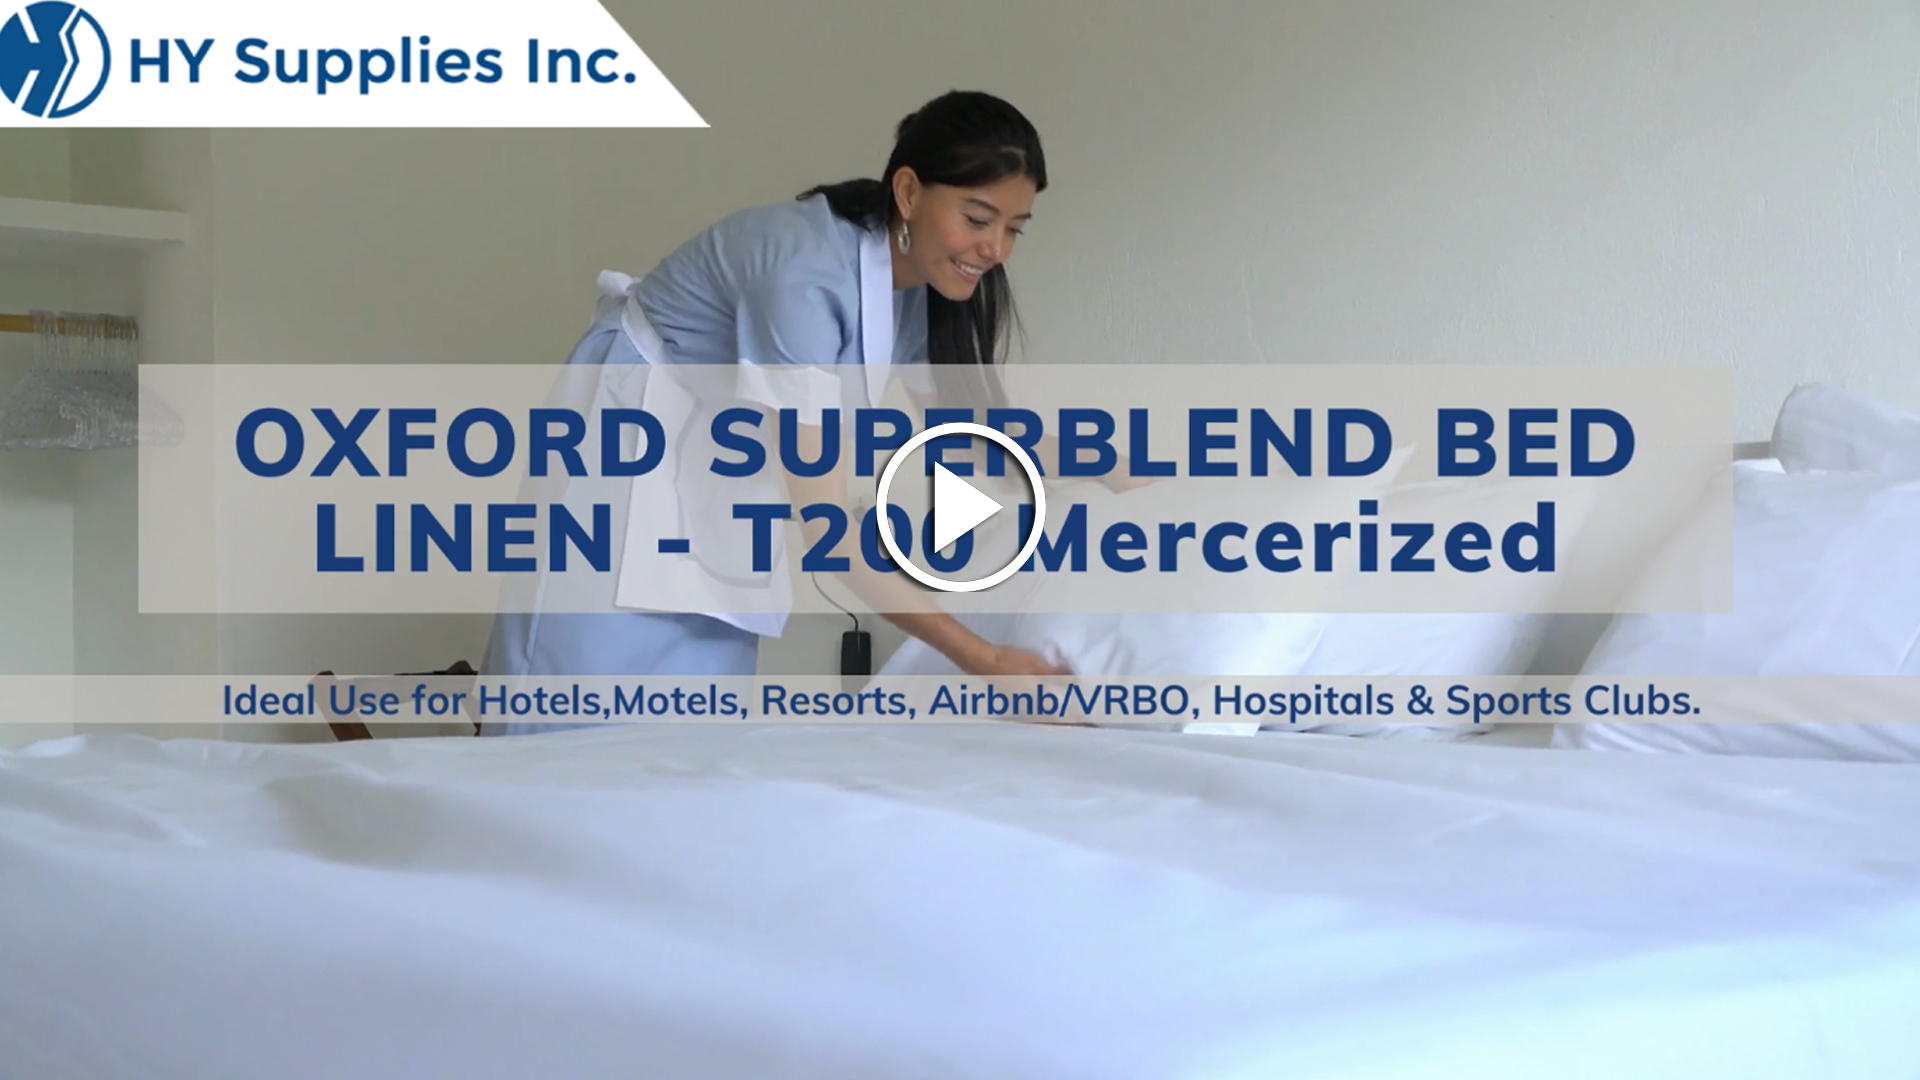 OXFORD SUPERBLEND BED LINEN - T200 Mercerized